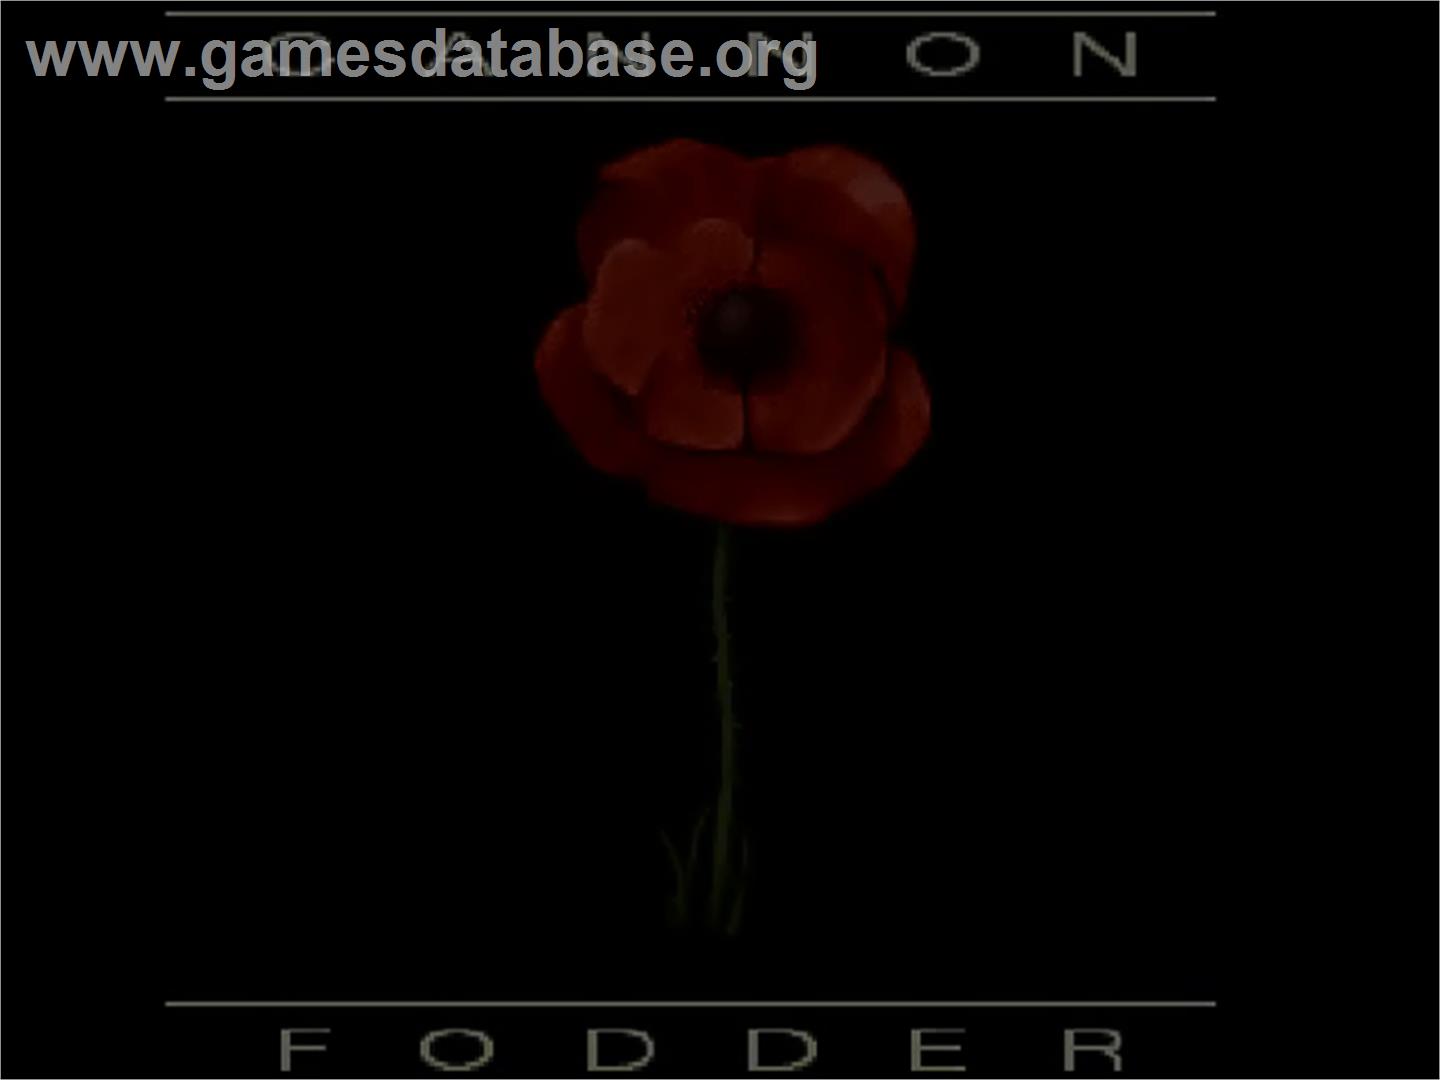 Cannon Fodder - Commodore Amiga CD32 - Artwork - Title Screen